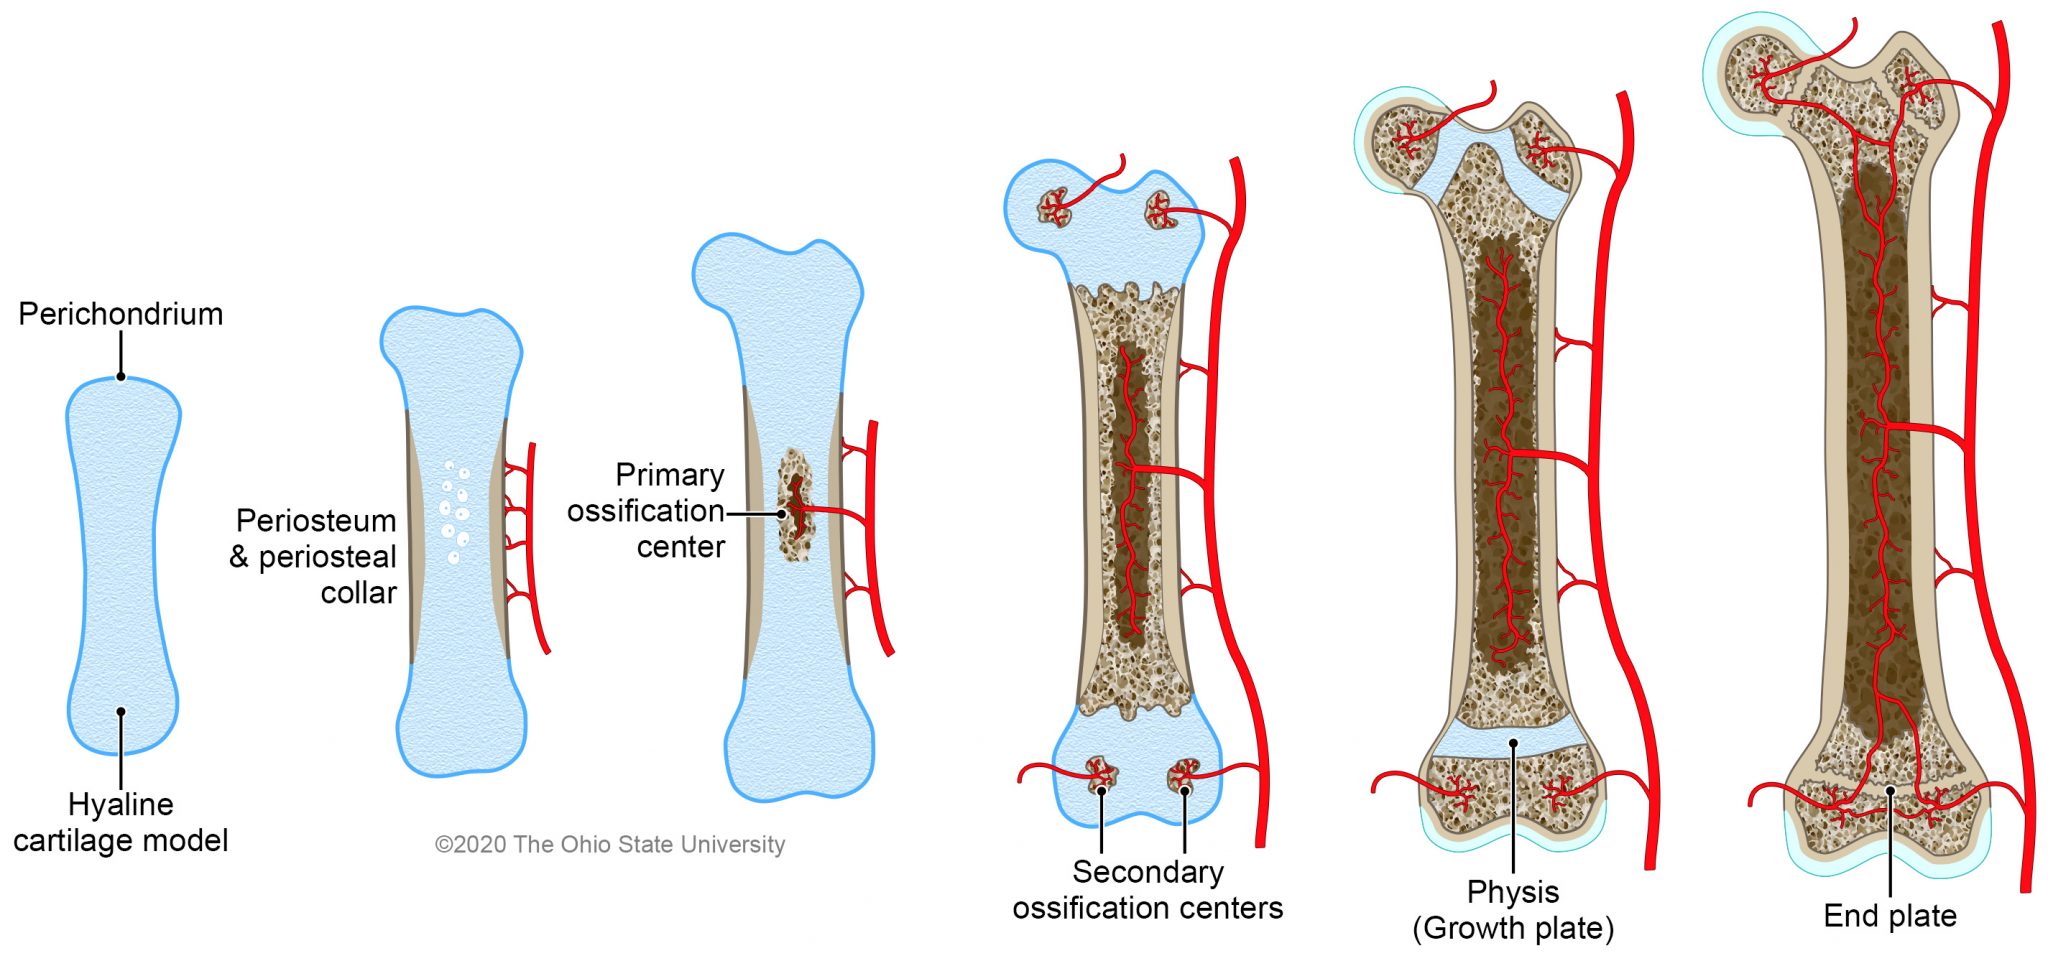 Пластина роста. Формирование костей. Механизмы роста кости. Рост трубчатой кости. Рост трубчатых костей.